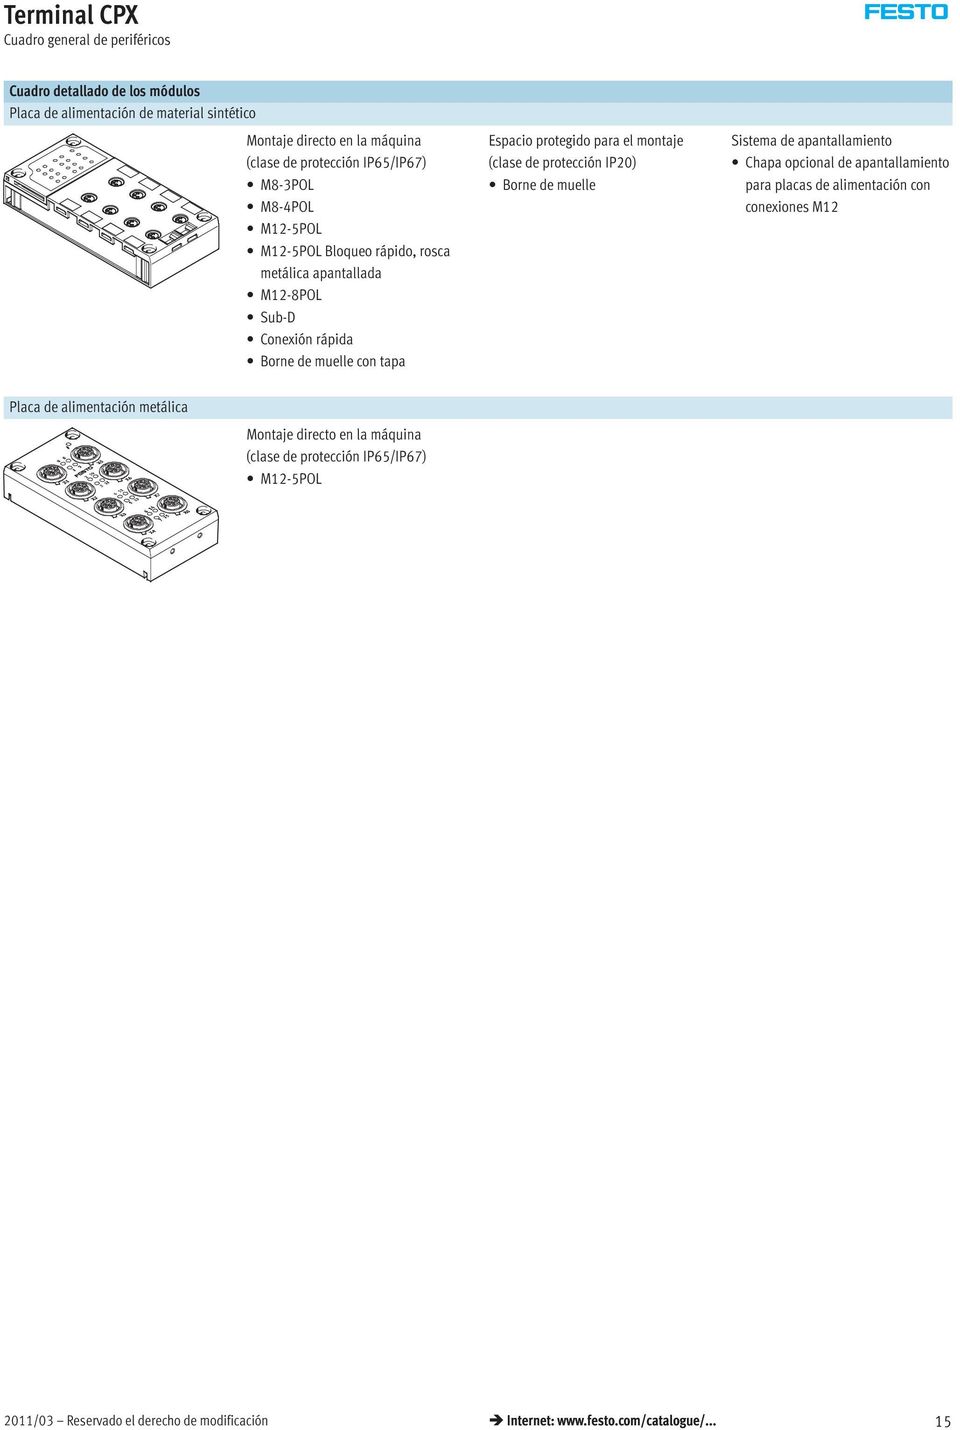 montaje (clase de protección IP20) Bornedemuelle Sistema de apantallamiento Chapa opcional de apantallamiento para placas de alimentación con conexiones M12 Placa de